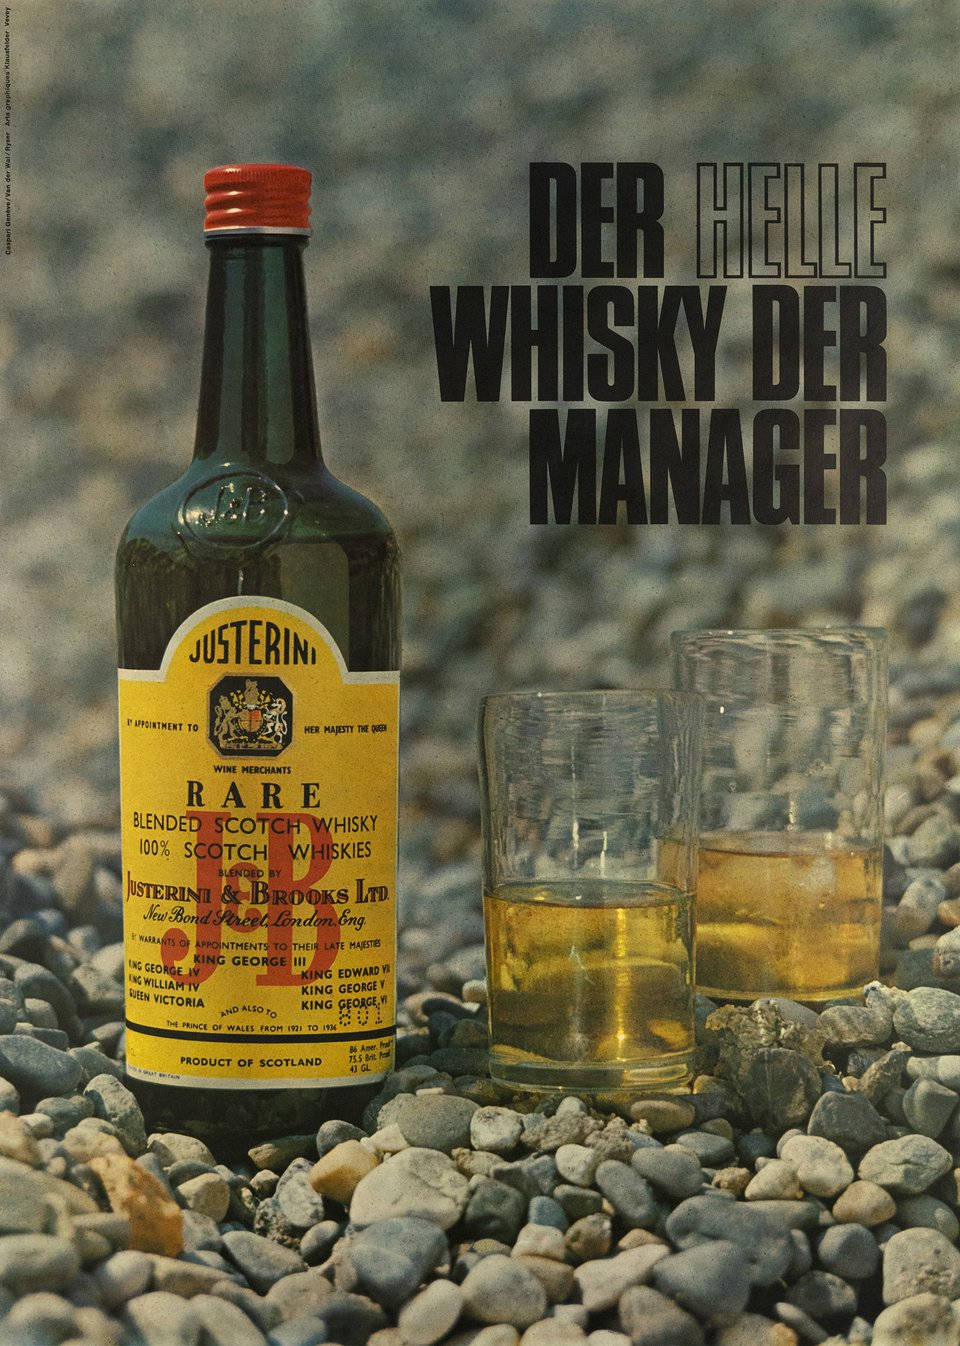 1. J&B Den lyse Whisky Den Manager Gaver Wallpaper